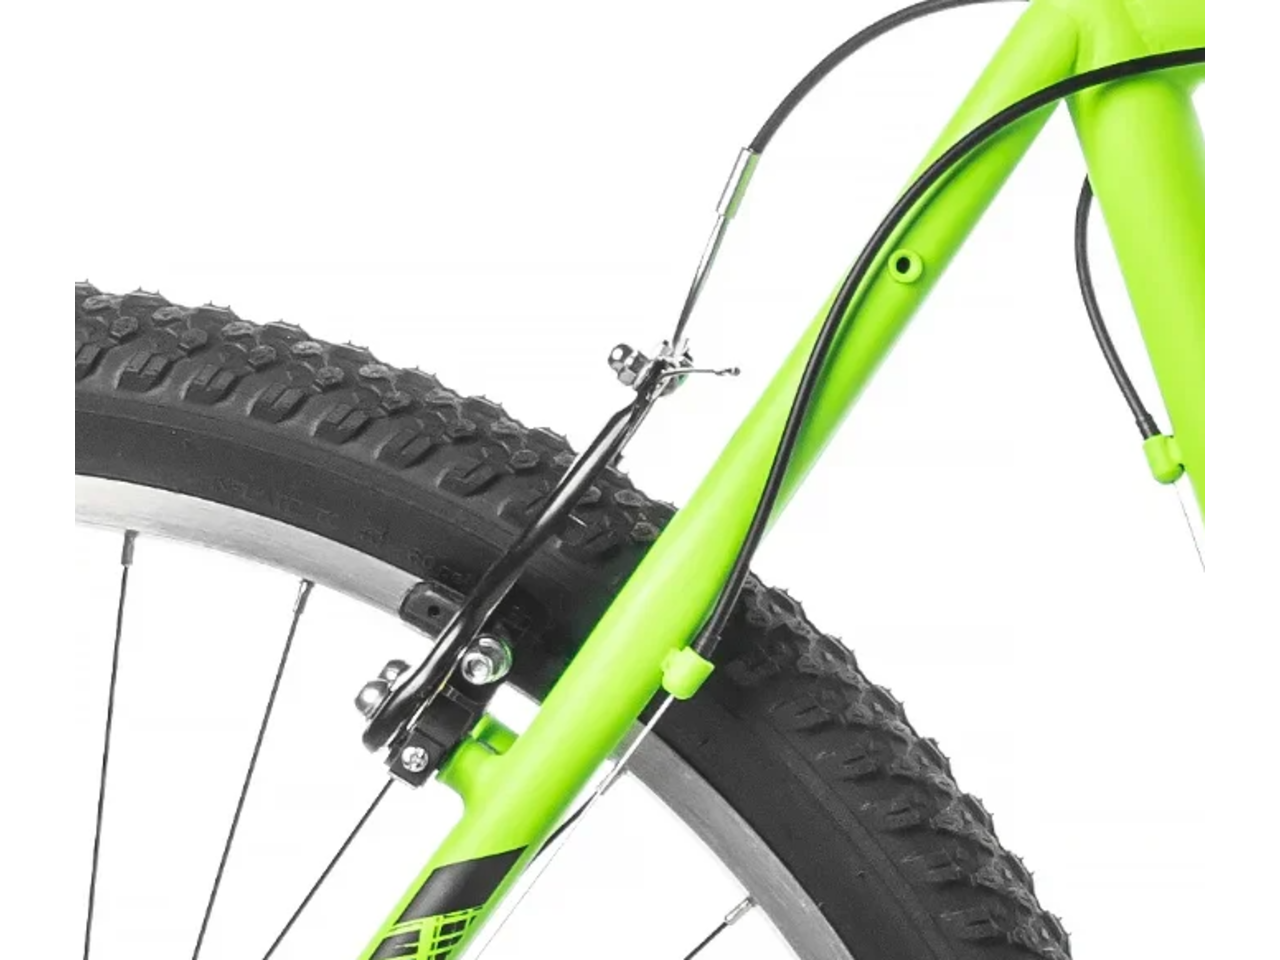 Велосипед ARENA Storm 2021 (16, зеленый)